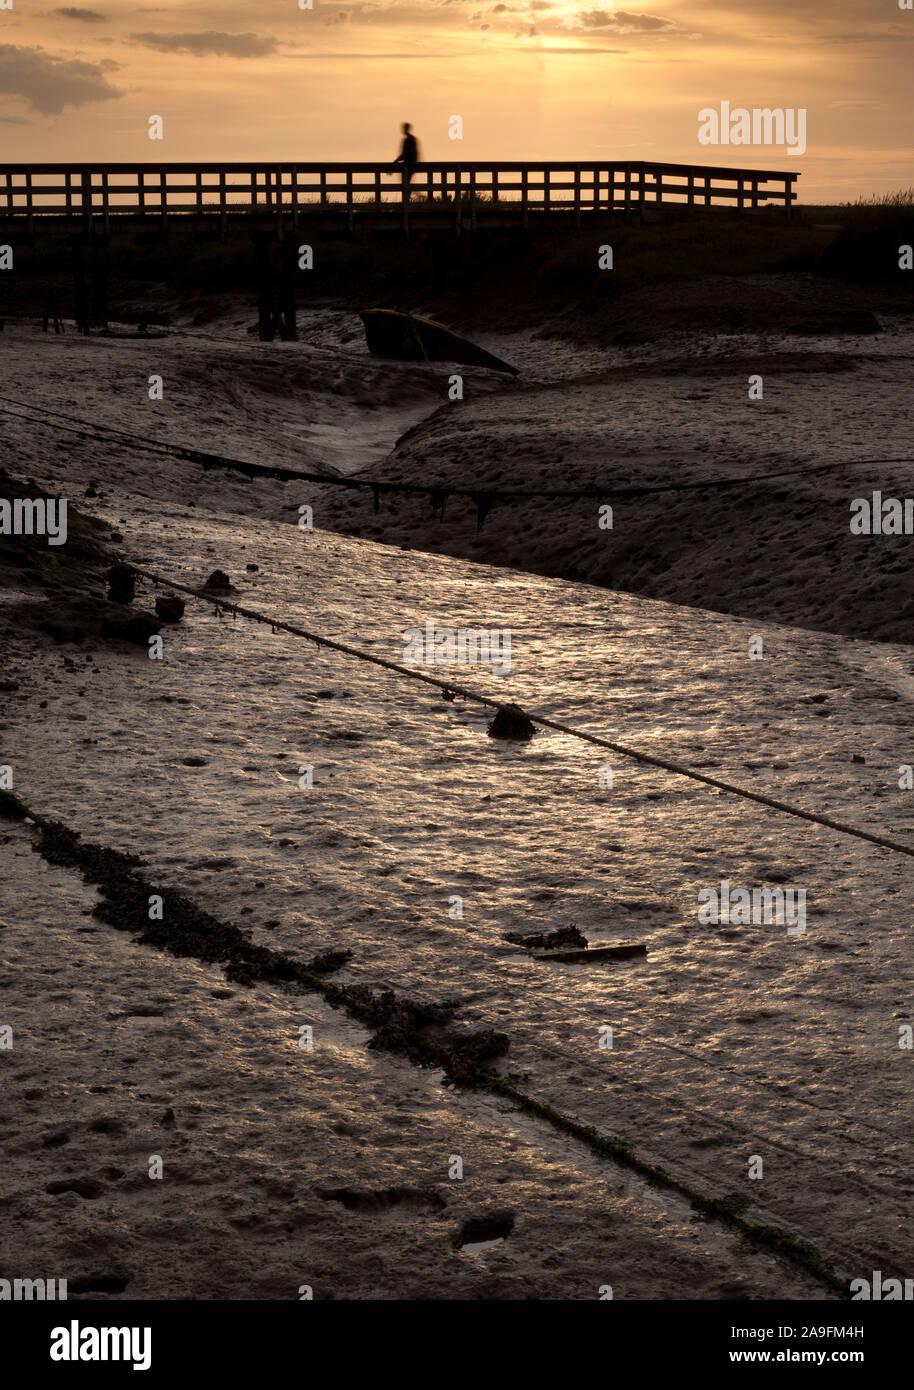 Moody Bild der Salzwiesen Schlamm bei Ebbe mit eine schattenhafte Gestalt zu Fuß über einen Steg Stockfoto